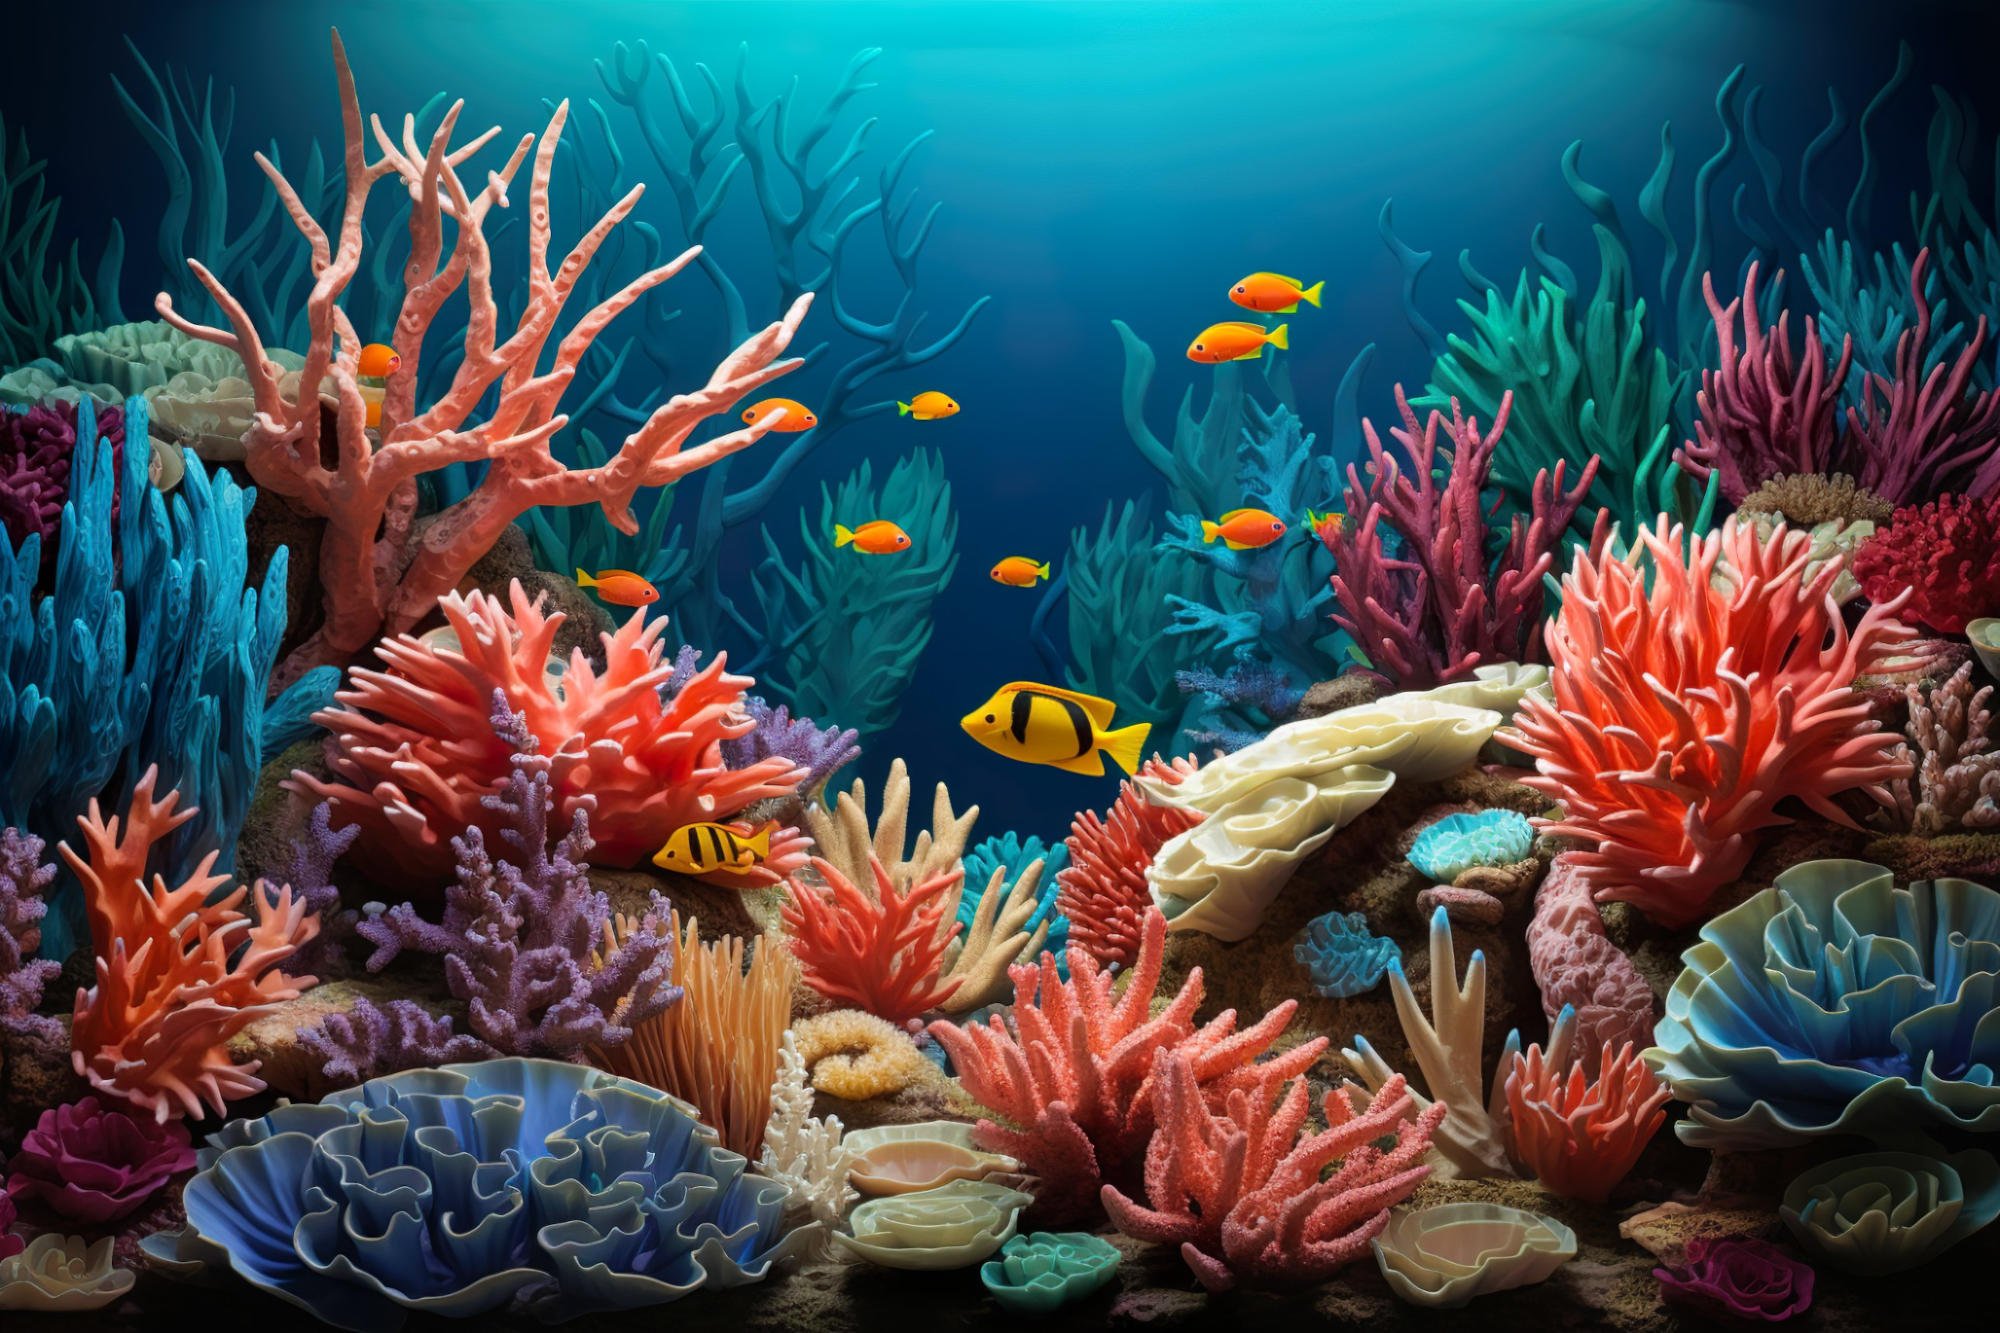 Zinātnieki ir maldināti gadu desmitiem – jauns pētījums atklāj jūras aļģu maldinošo lomu koraļļu rifu veselībā